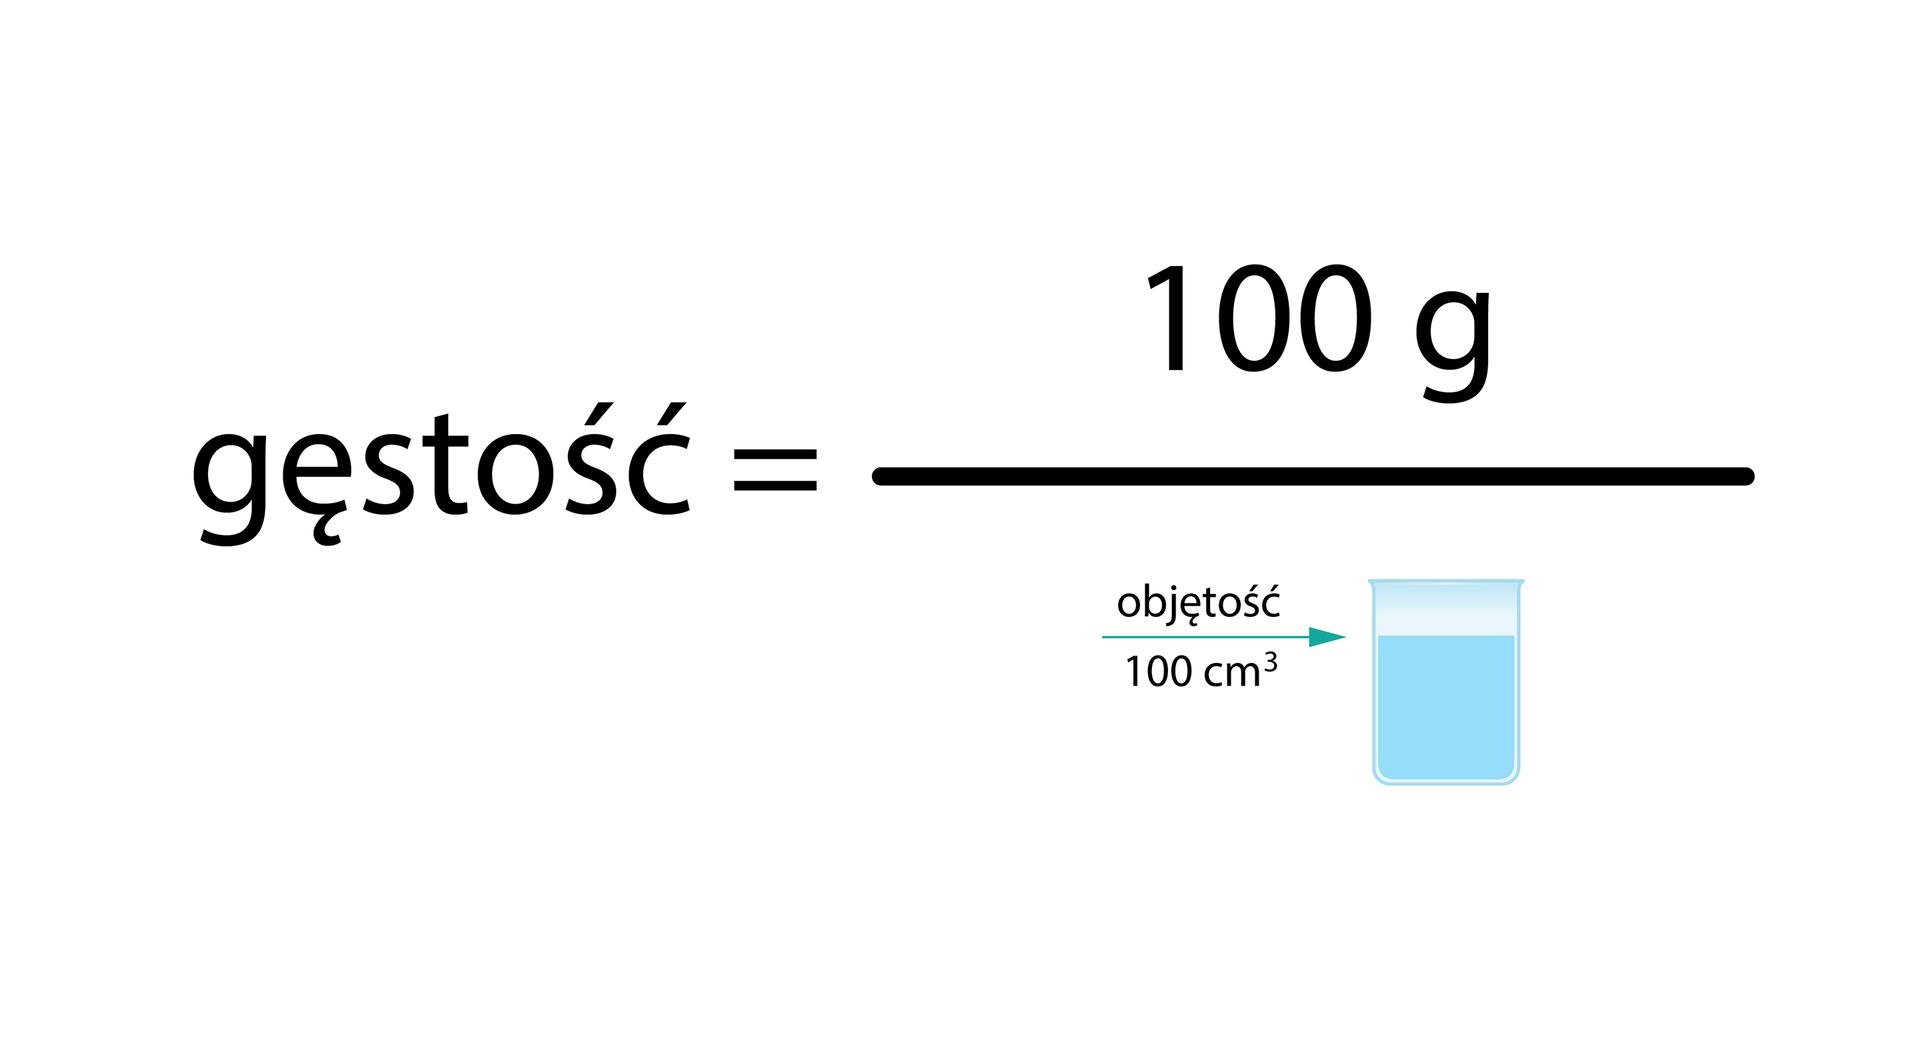 Ilustracja ponownie prezentuje równanie wyrażone rysunkami, będące zmienioną formą równania poprzedniego. Gęstość równa się 100 gramów podzielone przez rysunek zlewki z wodą i podpisem Objętość 100 centymetrów sześciennych.